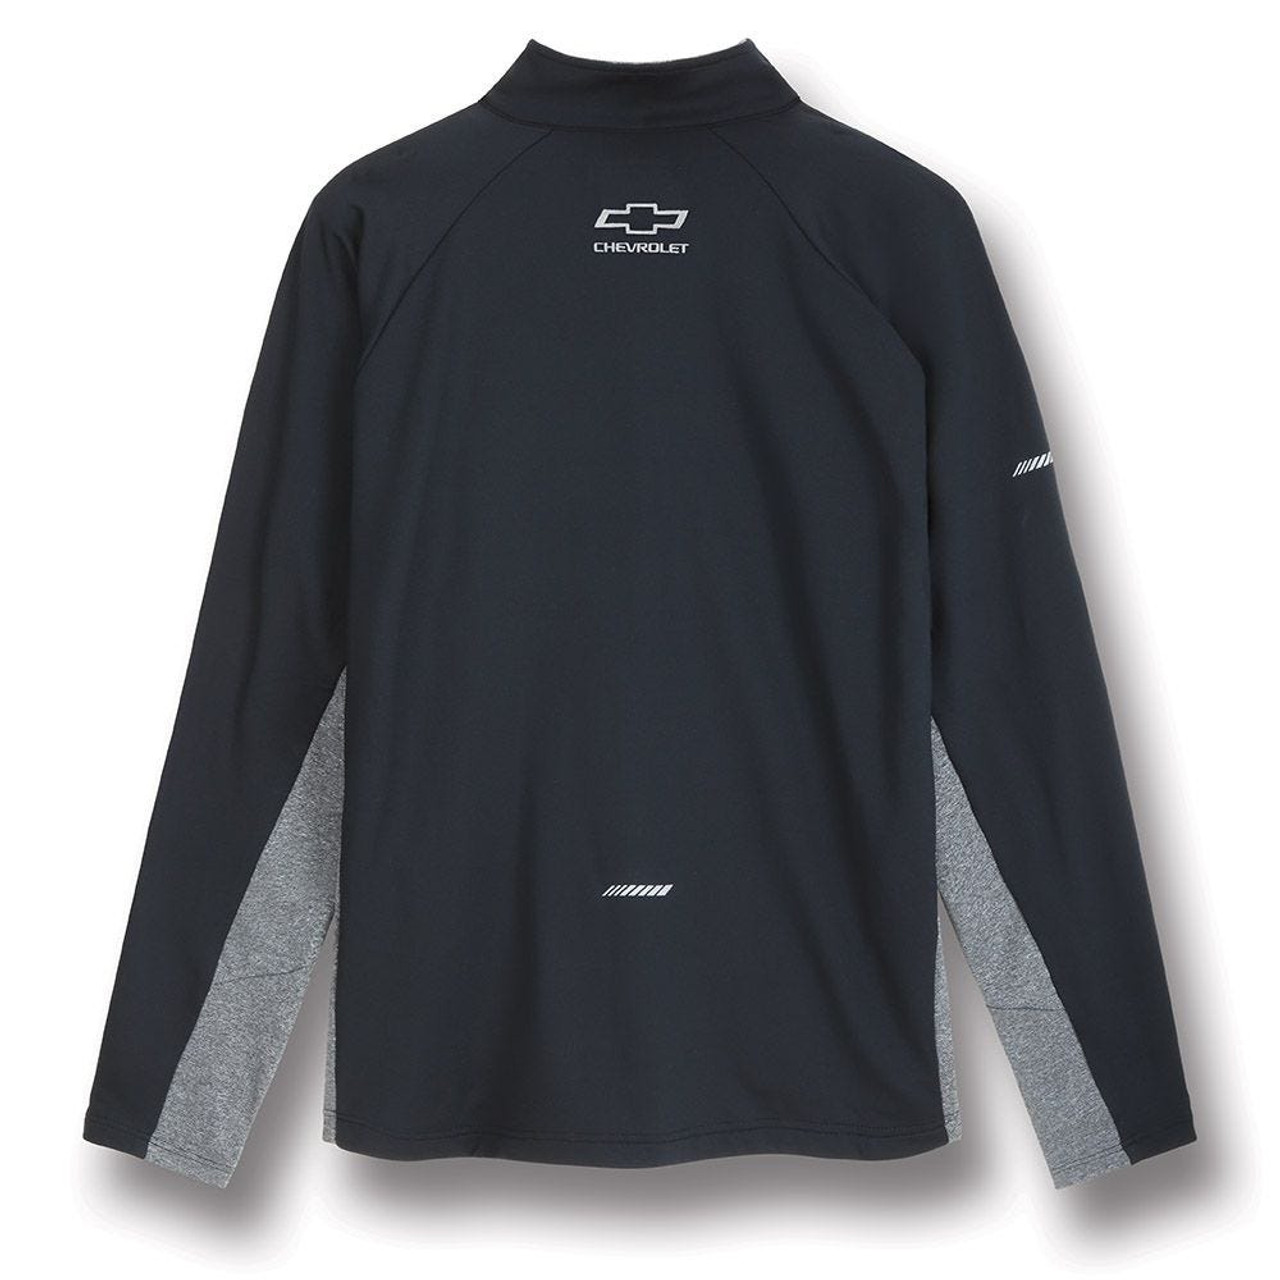 Chevrolet Silverado 1/2 Zip Black/Gray Sweatshirt Pullover Jacket (back)